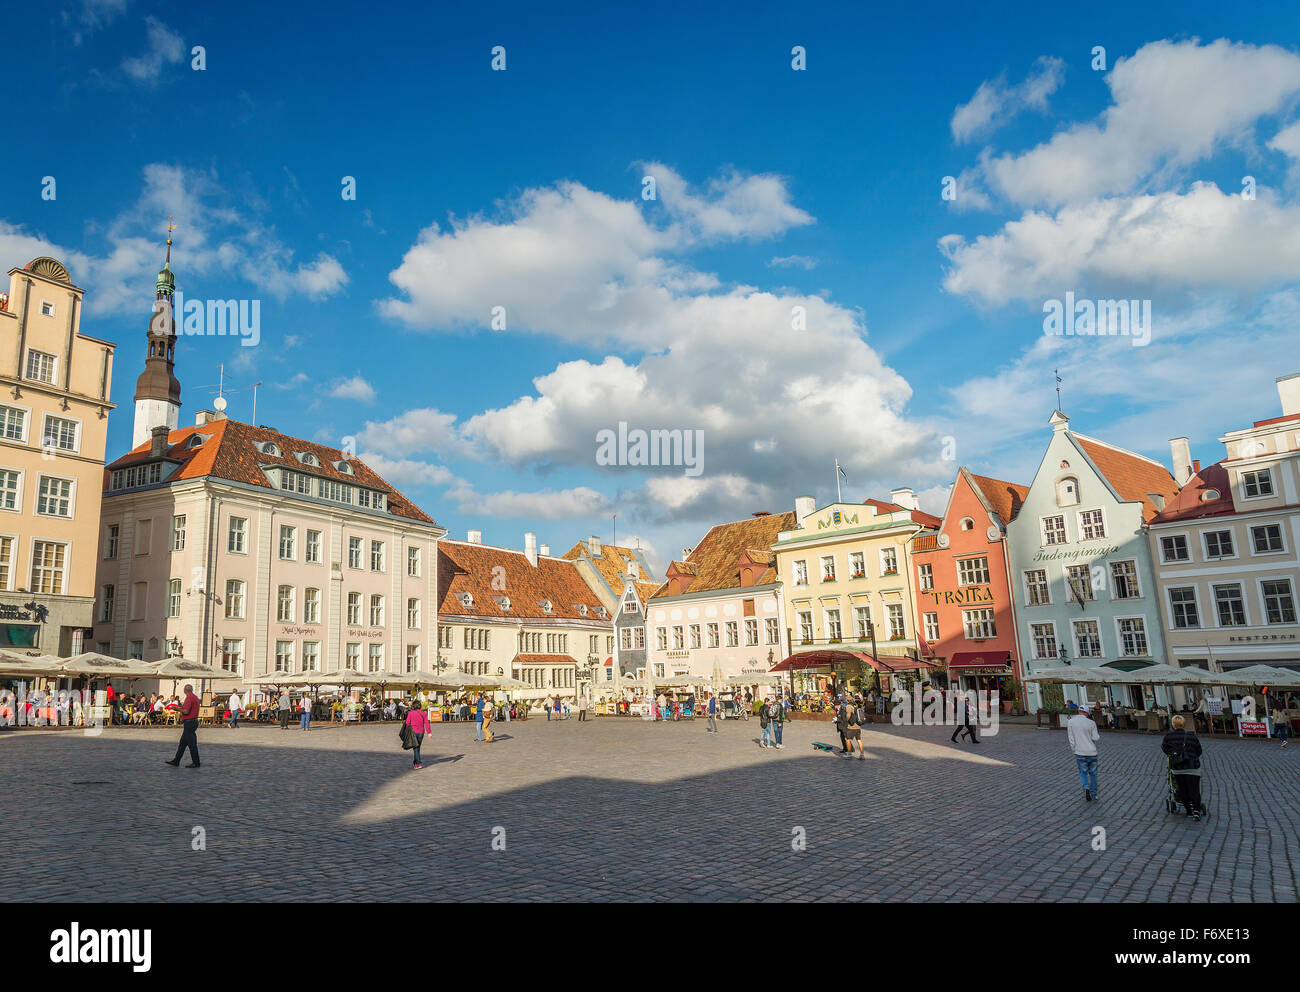 Place principale de la vieille ville de Tallinn en Estonie Banque D'Images